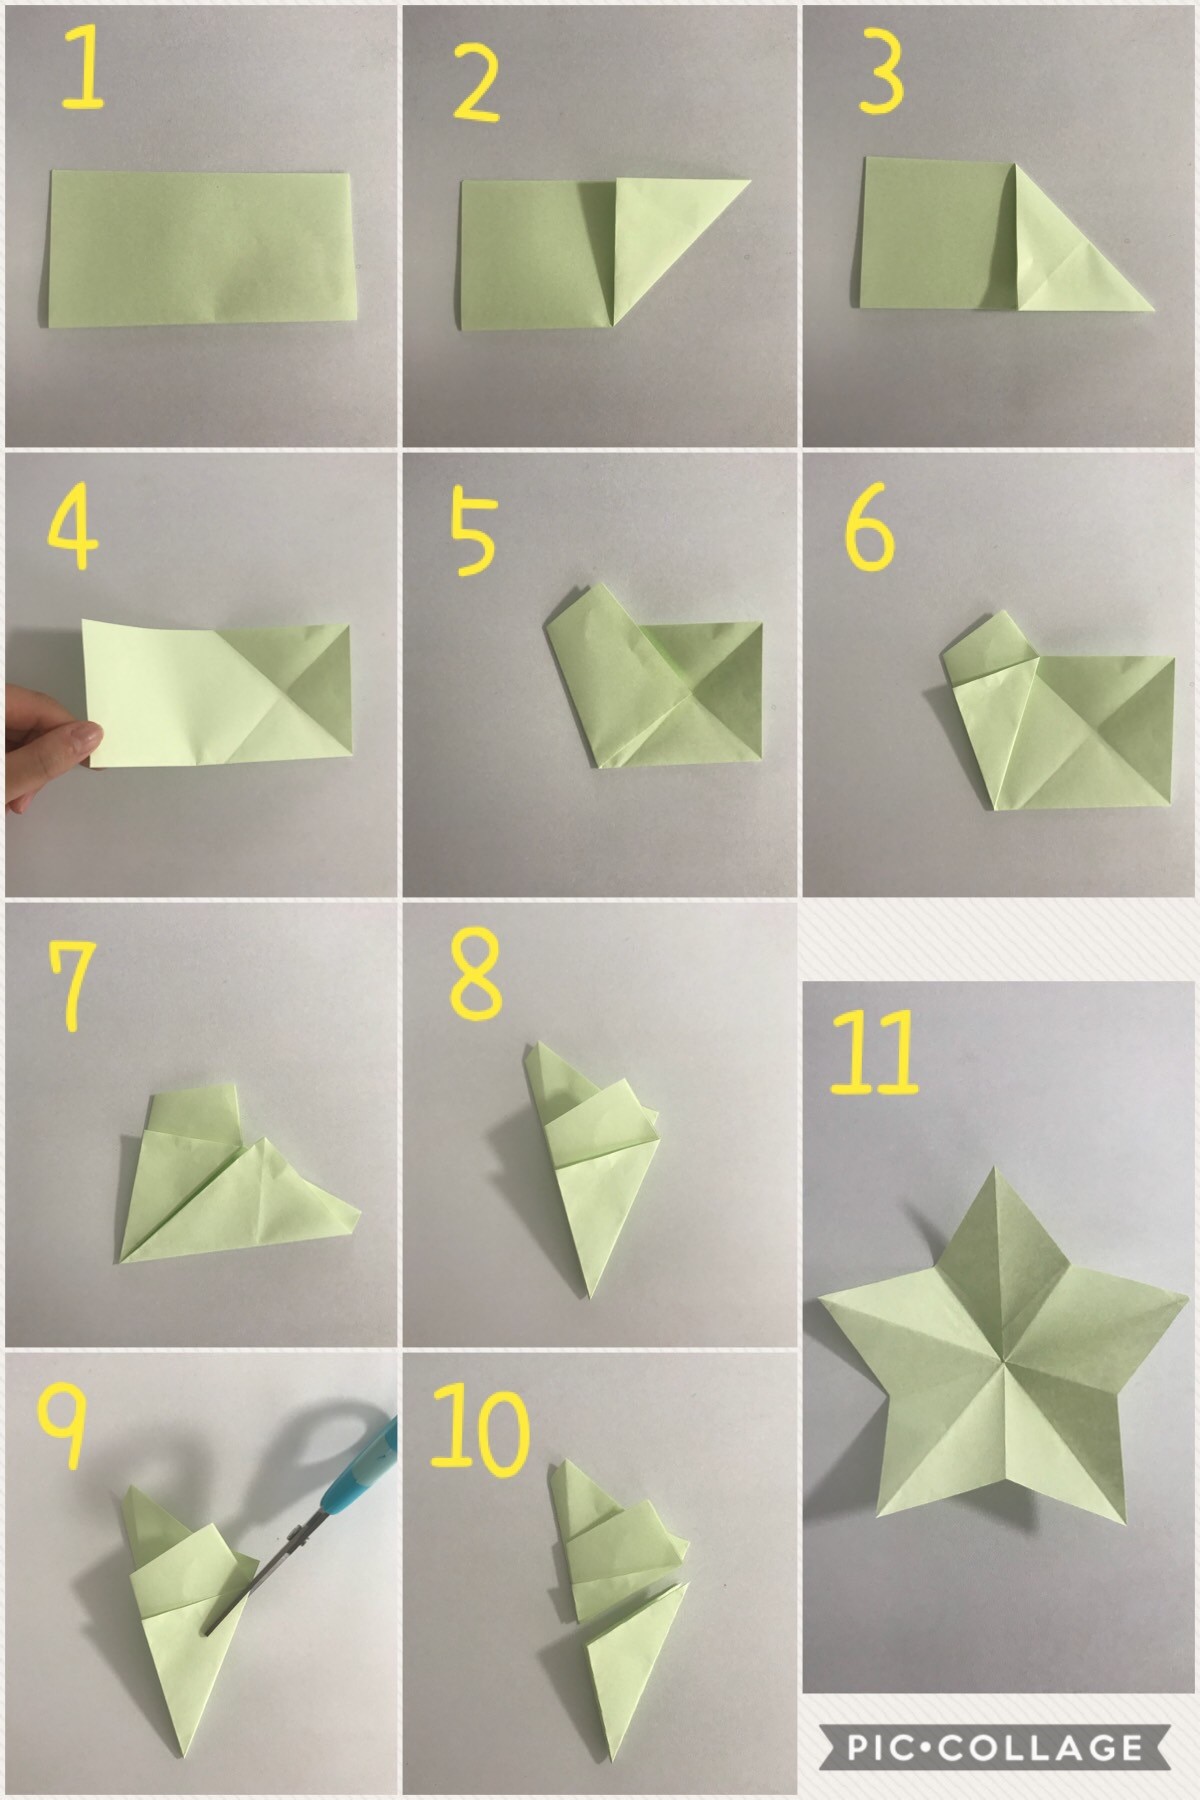 七夕飾りの作り方 折り紙で作るいろんな星 これ大事な話ですよ